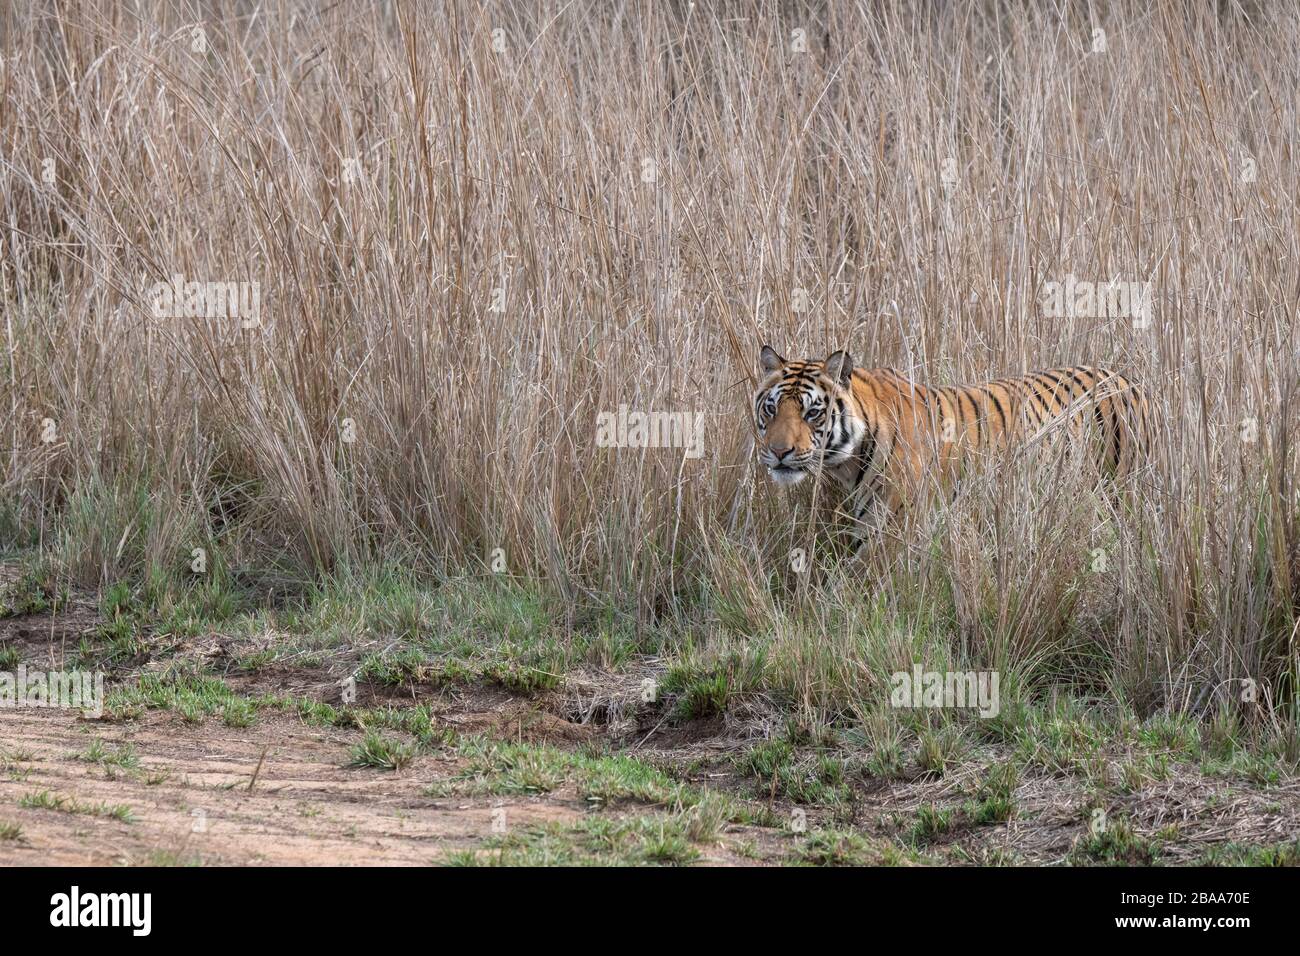 India, Madhya Pradesh, Bandhavgarh National Park. Young male Bengal tiger in tall grassland habitat. (WILD: Panthera tigris) Endangered species. Stock Photo